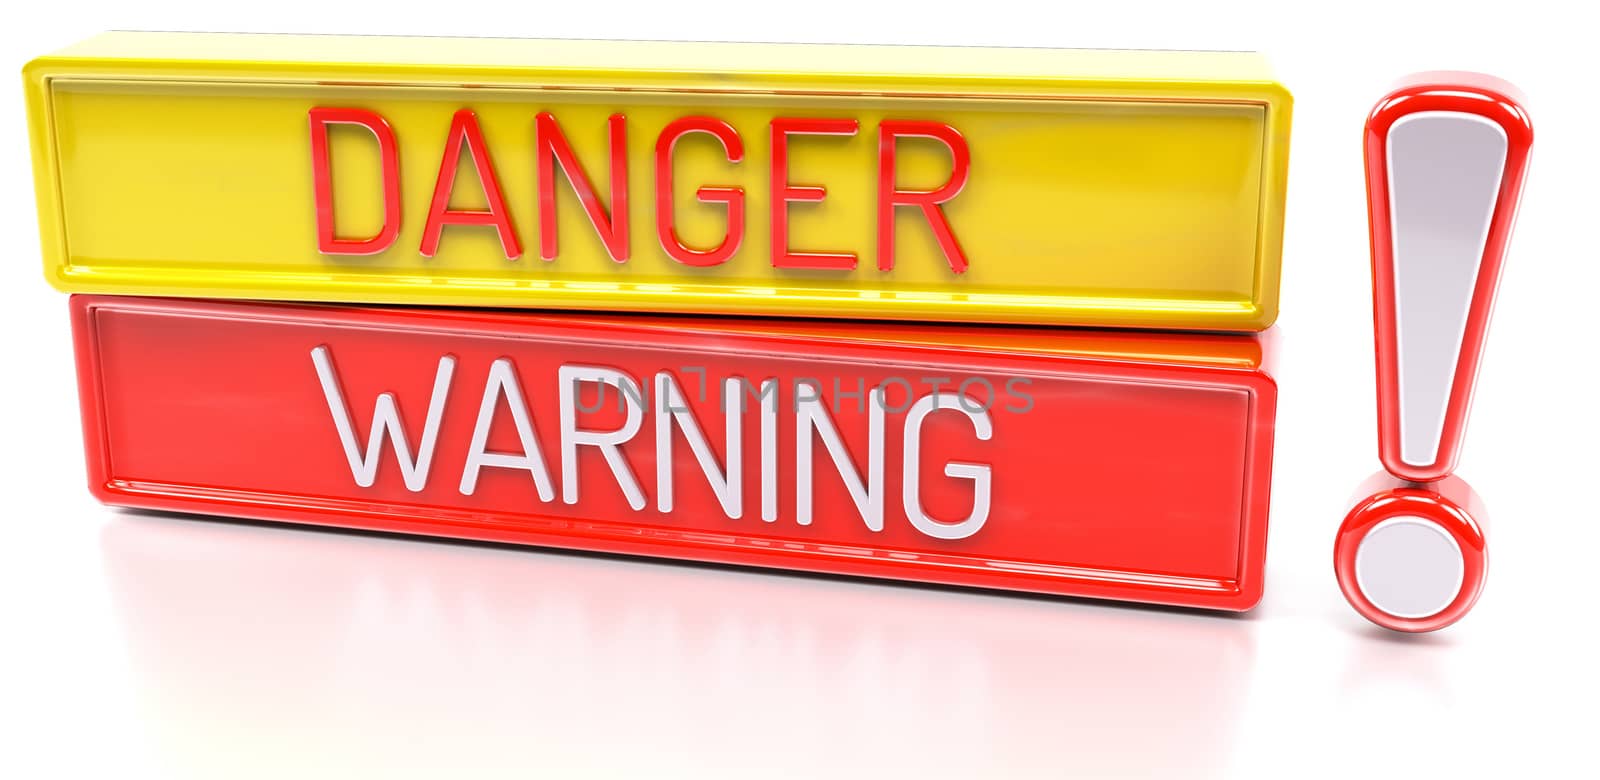 Danger Warning - 3d banner, isolated on white background